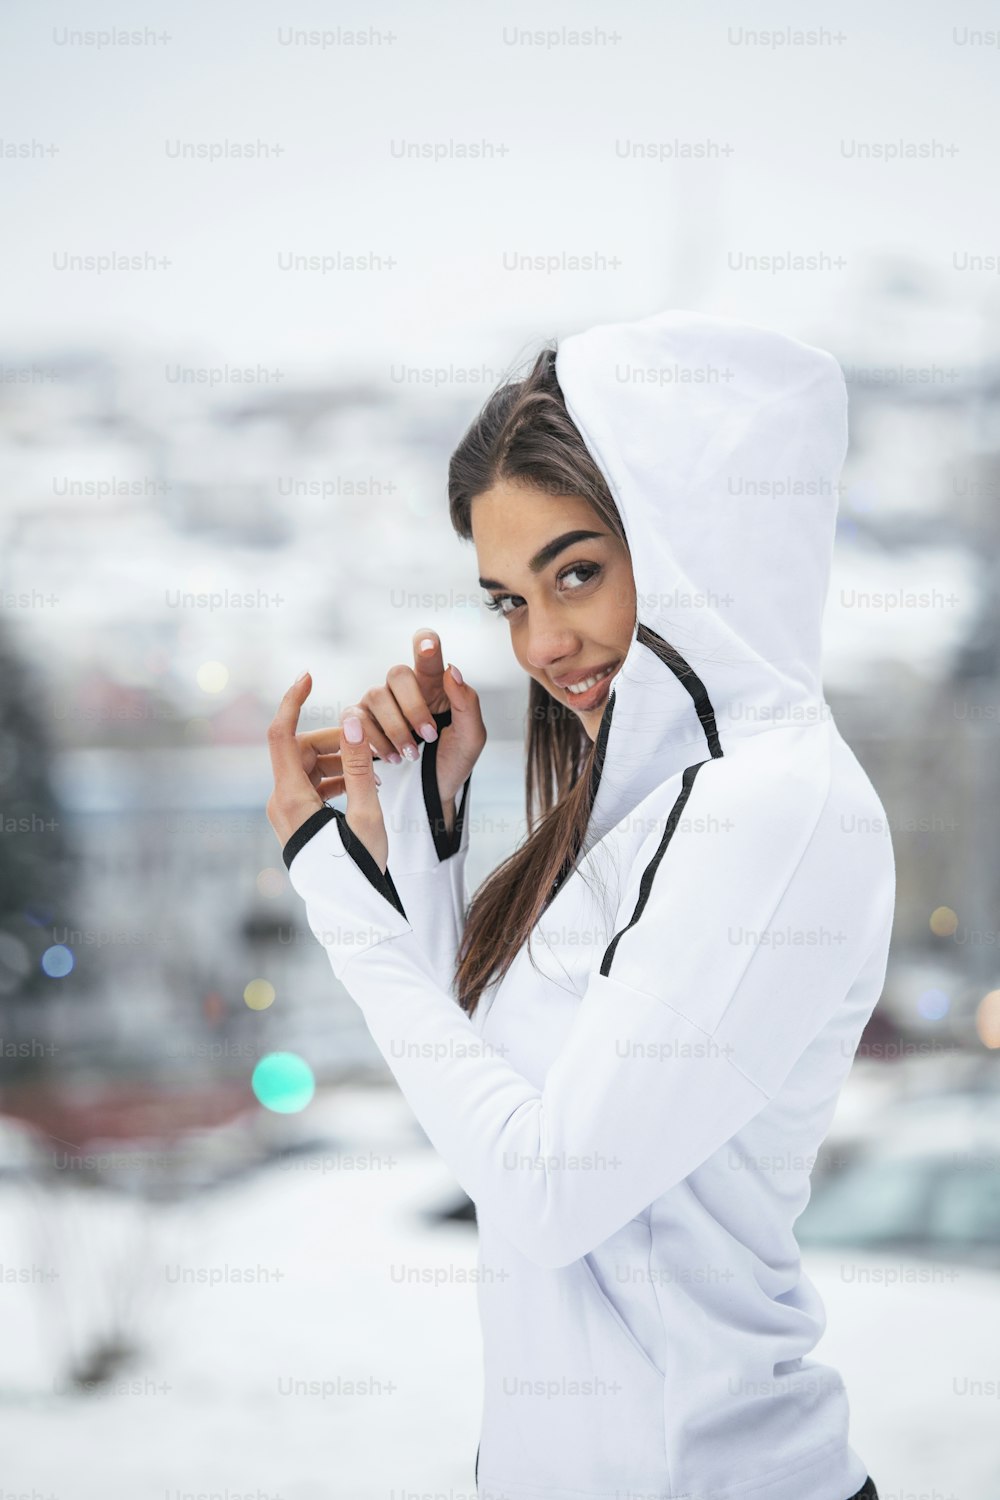 Vista de retrato de joven, satisfecha, sonriente, motivada y enfocada, chica deportiva activa calentándose en ropa deportiva de invierno, la naturaleza nevada por la mañana.